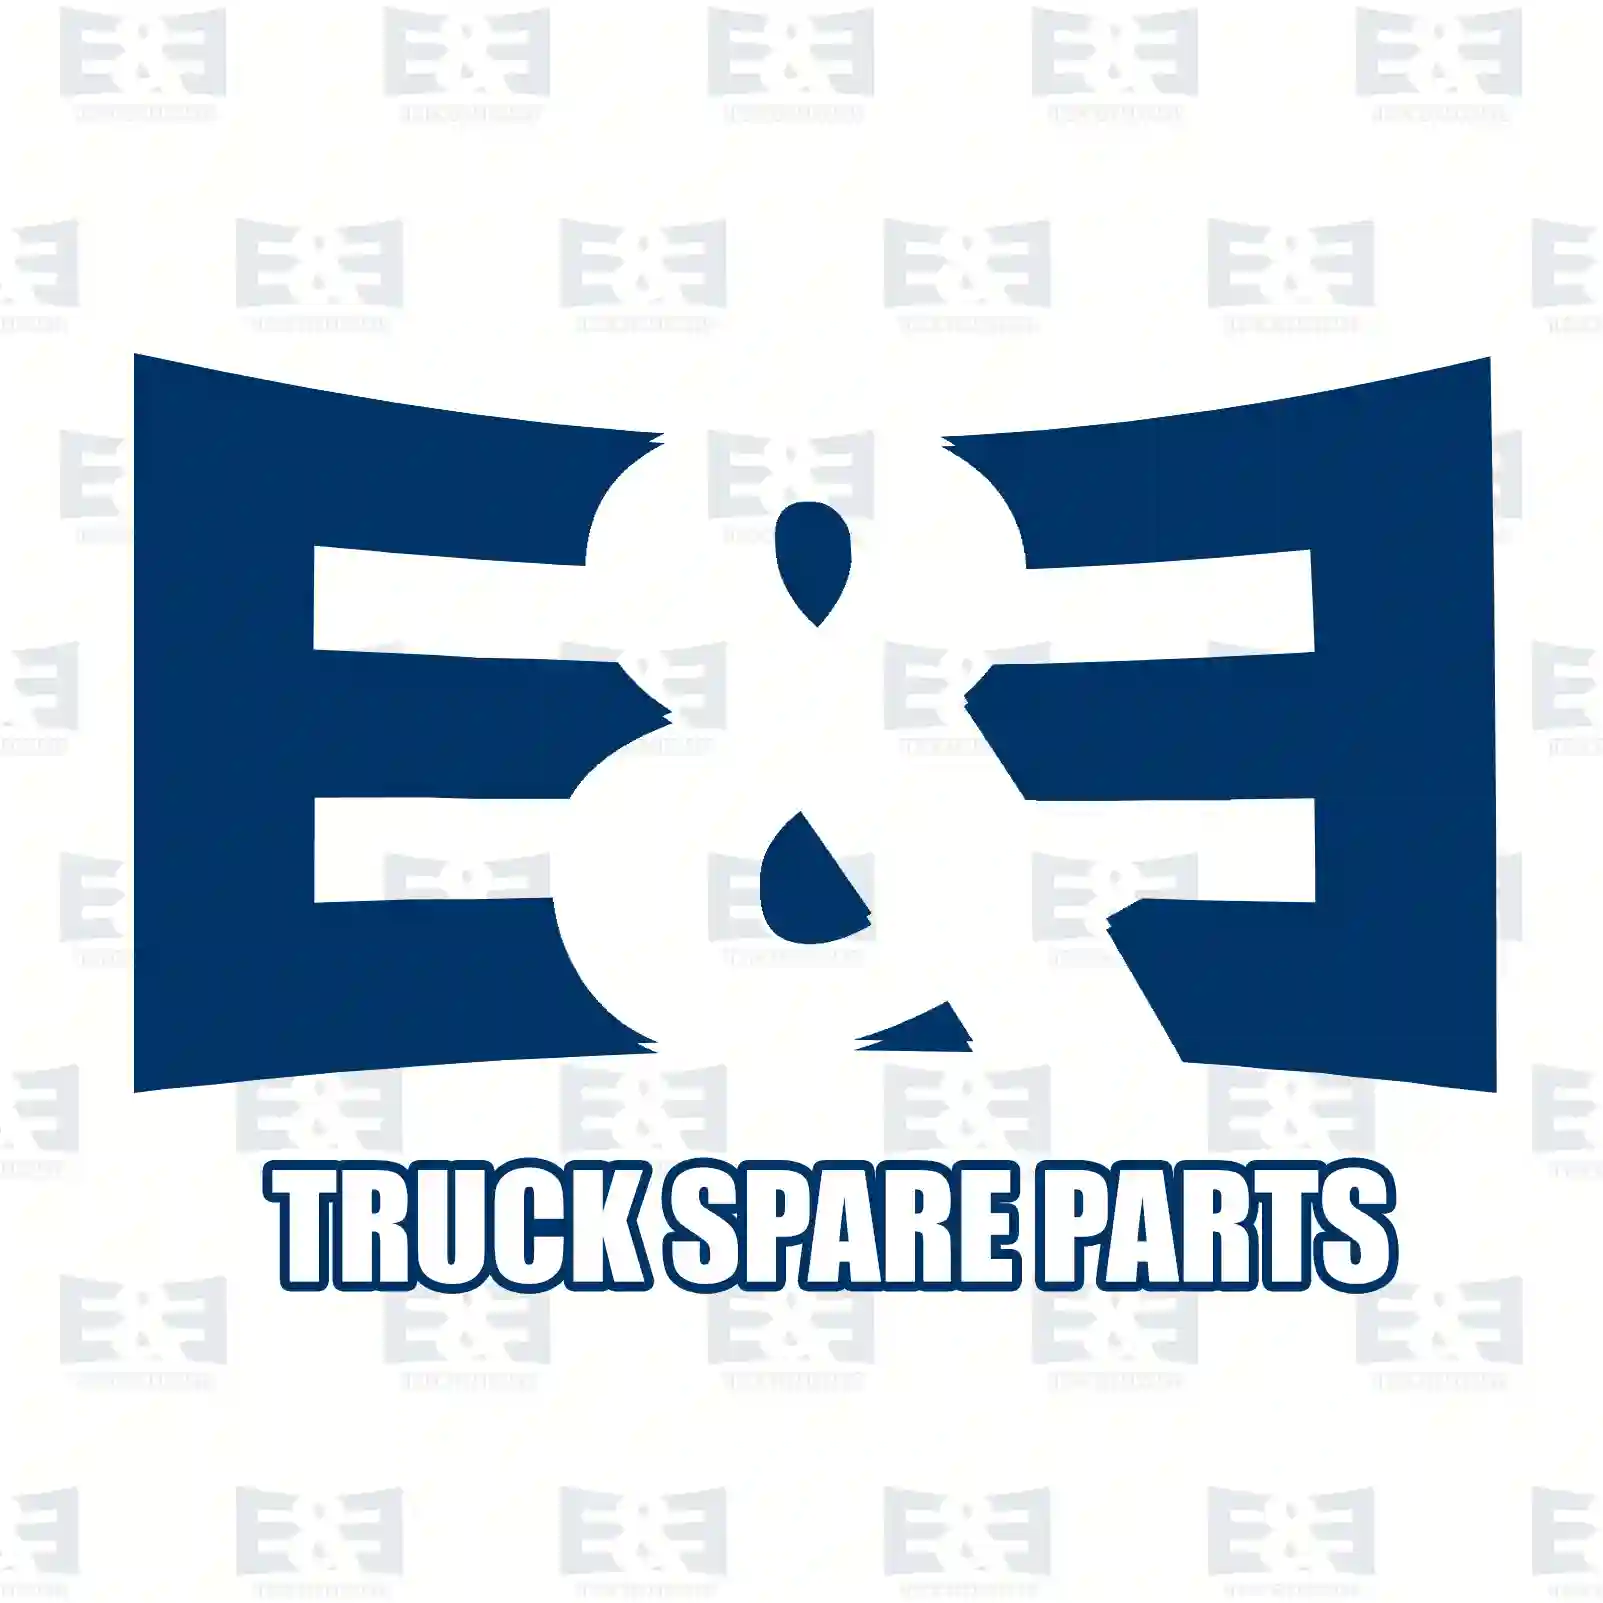 Thermostat, 2E2203657, 61-4954, 95-9160, Y201365, 00222730, 00770662, 0052031775, 0052031775, 222730, 770662, 7403839110, 1661993, 3839110, 8149175, 304395, ZG00663-0008 ||  2E2203657 E&E Truck Spare Parts | Truck Spare Parts, Auotomotive Spare Parts Thermostat, 2E2203657, 61-4954, 95-9160, Y201365, 00222730, 00770662, 0052031775, 0052031775, 222730, 770662, 7403839110, 1661993, 3839110, 8149175, 304395, ZG00663-0008 ||  2E2203657 E&E Truck Spare Parts | Truck Spare Parts, Auotomotive Spare Parts